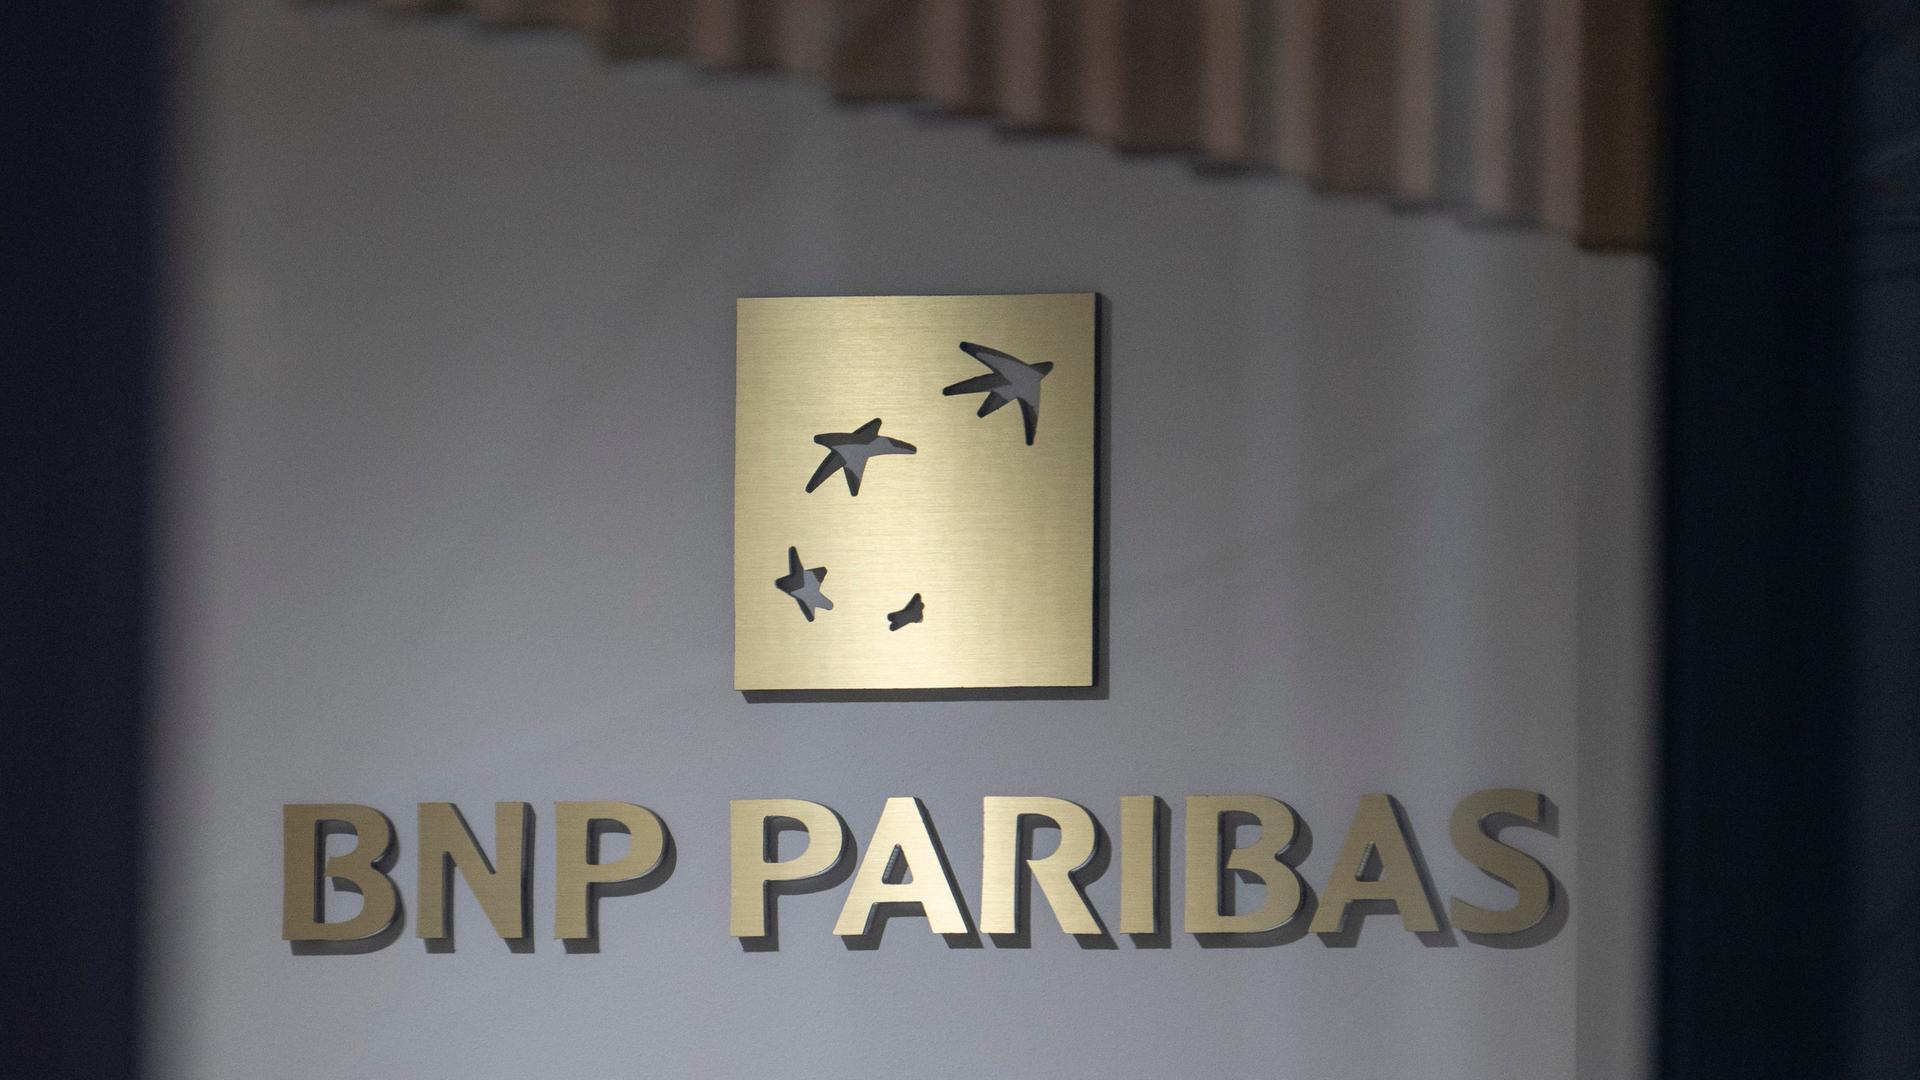 Hessen, Frankfurt/Main: Das Logo der BNP Paribas an einem Gebäude in Frankfurt. Steuerfahnder haben nach Medieninformationen im Zusammenhang mit Cum-Ex Aktiendeals Räumlichkeiten der Bank durchsucht.